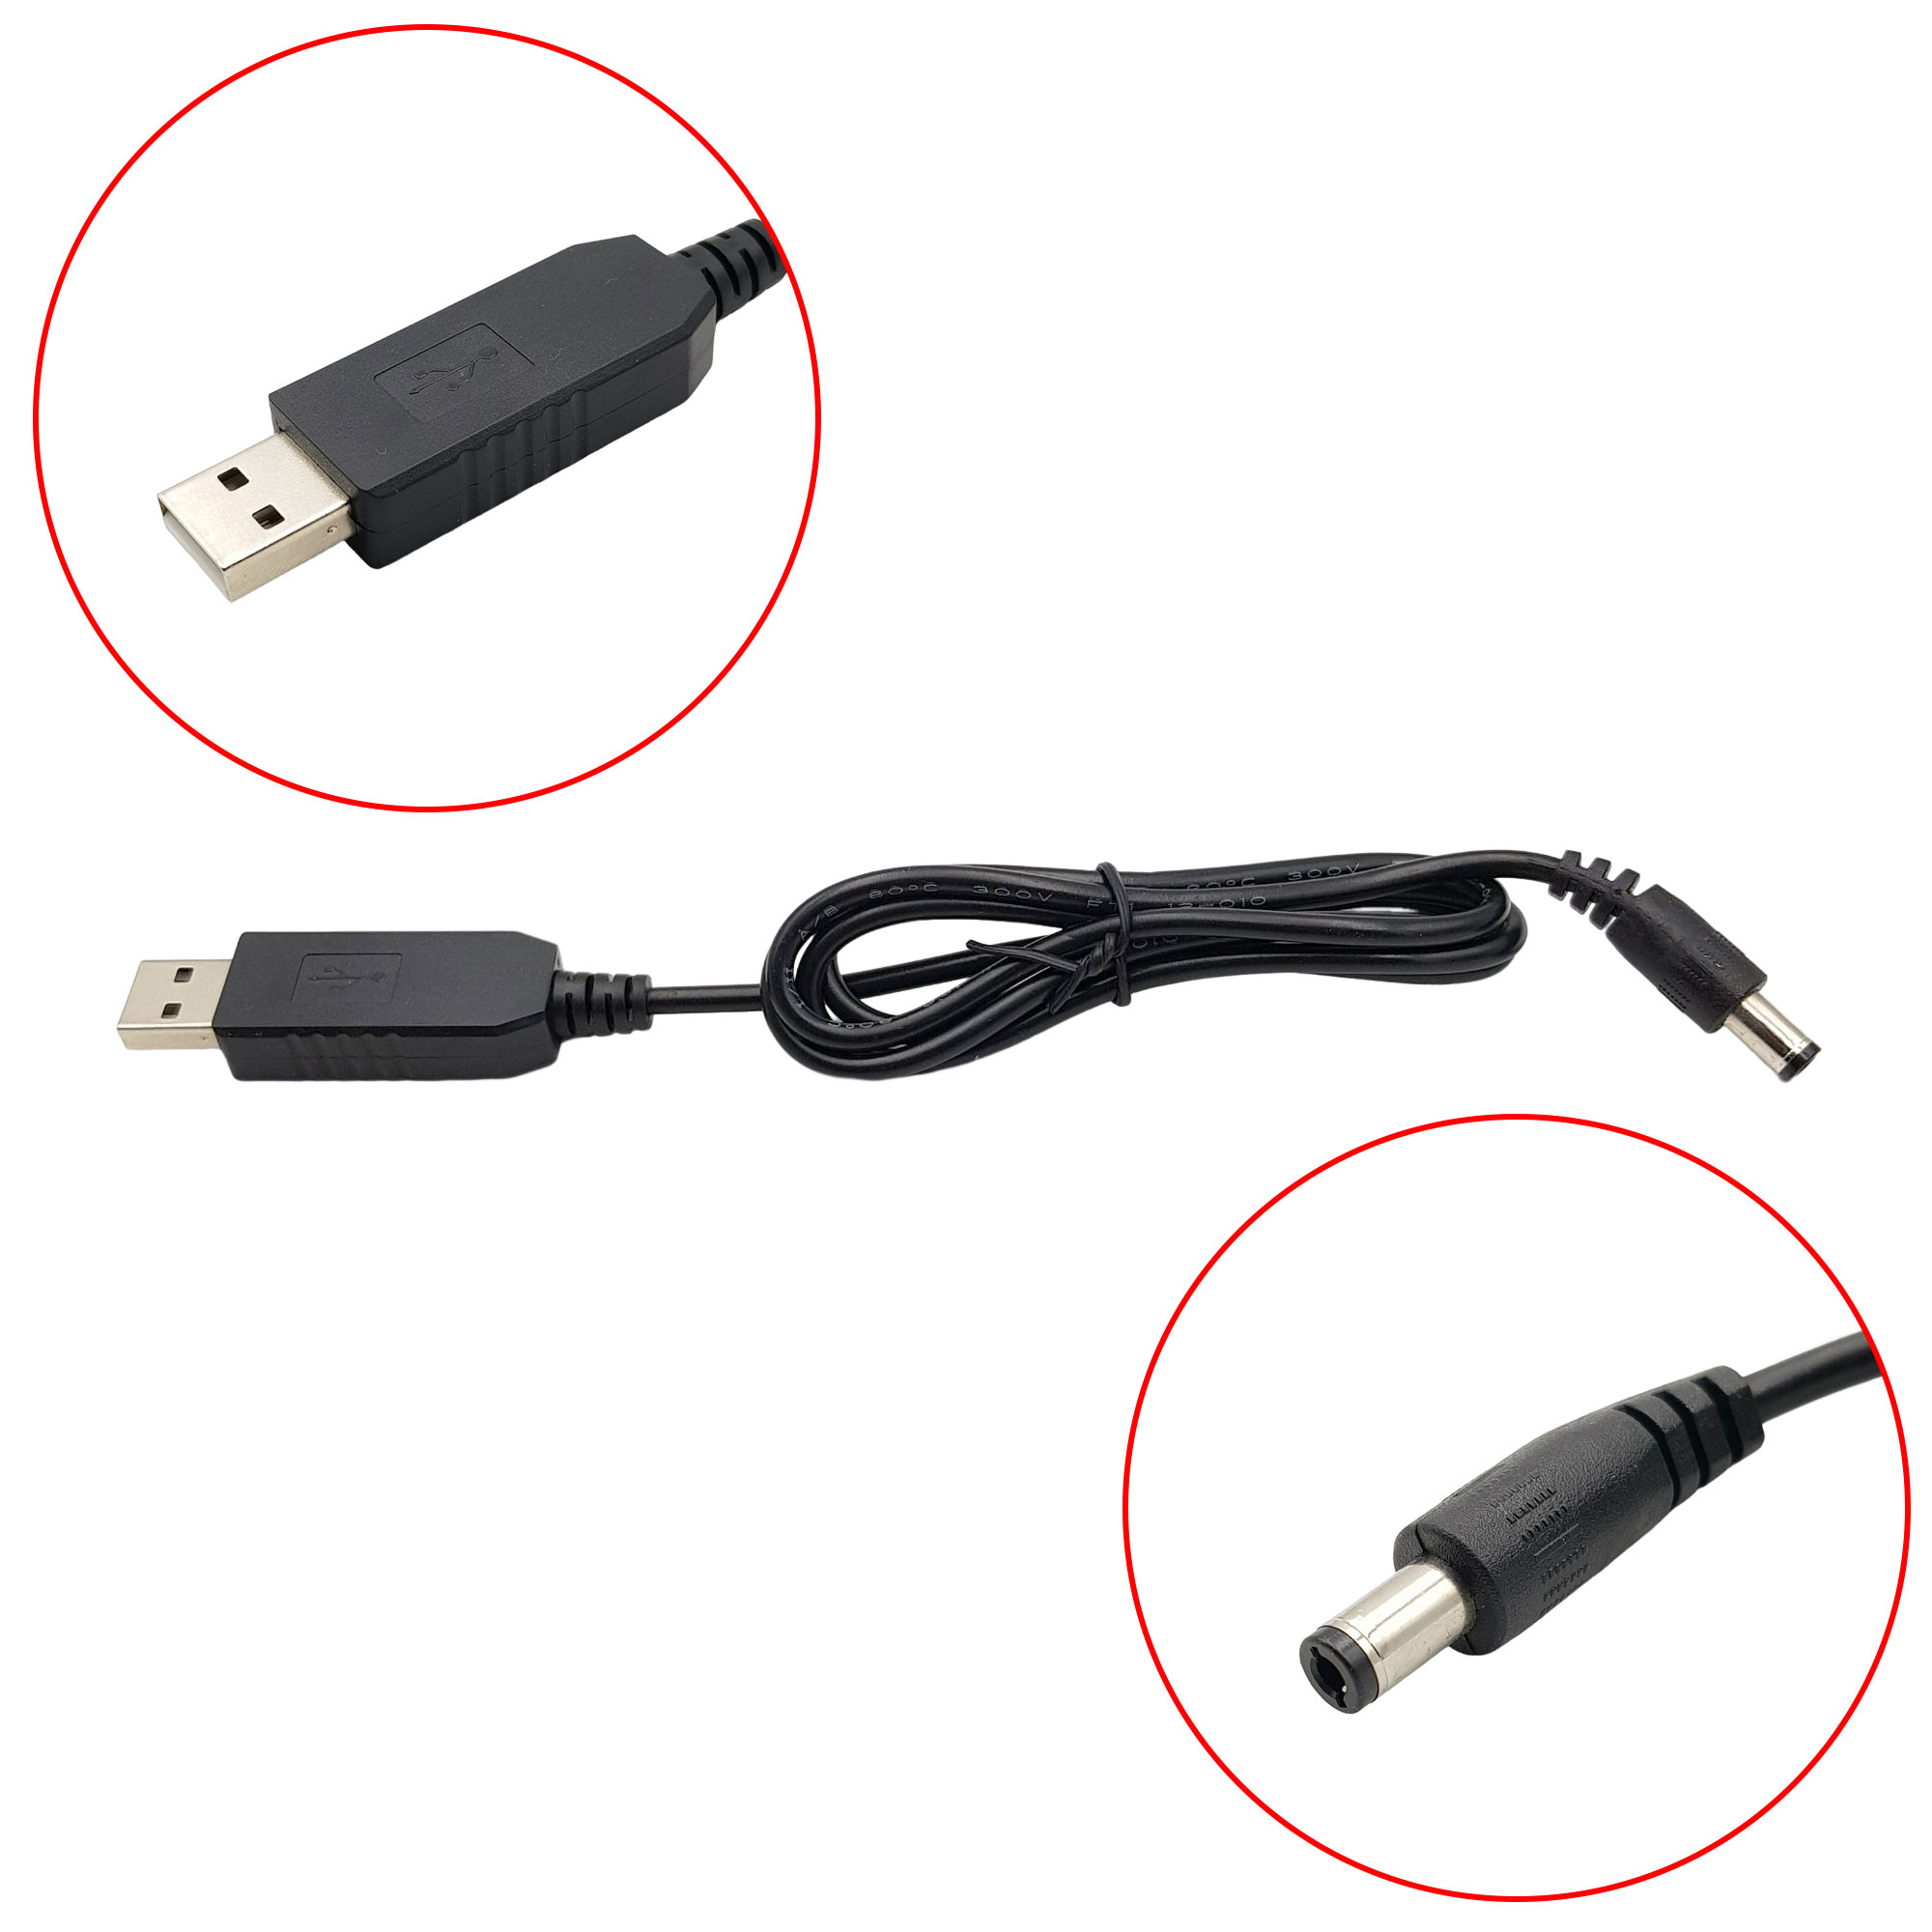 USB tăng áp sạc máy hút bụi, nguồn dự phòng WiFi 9 / 12V